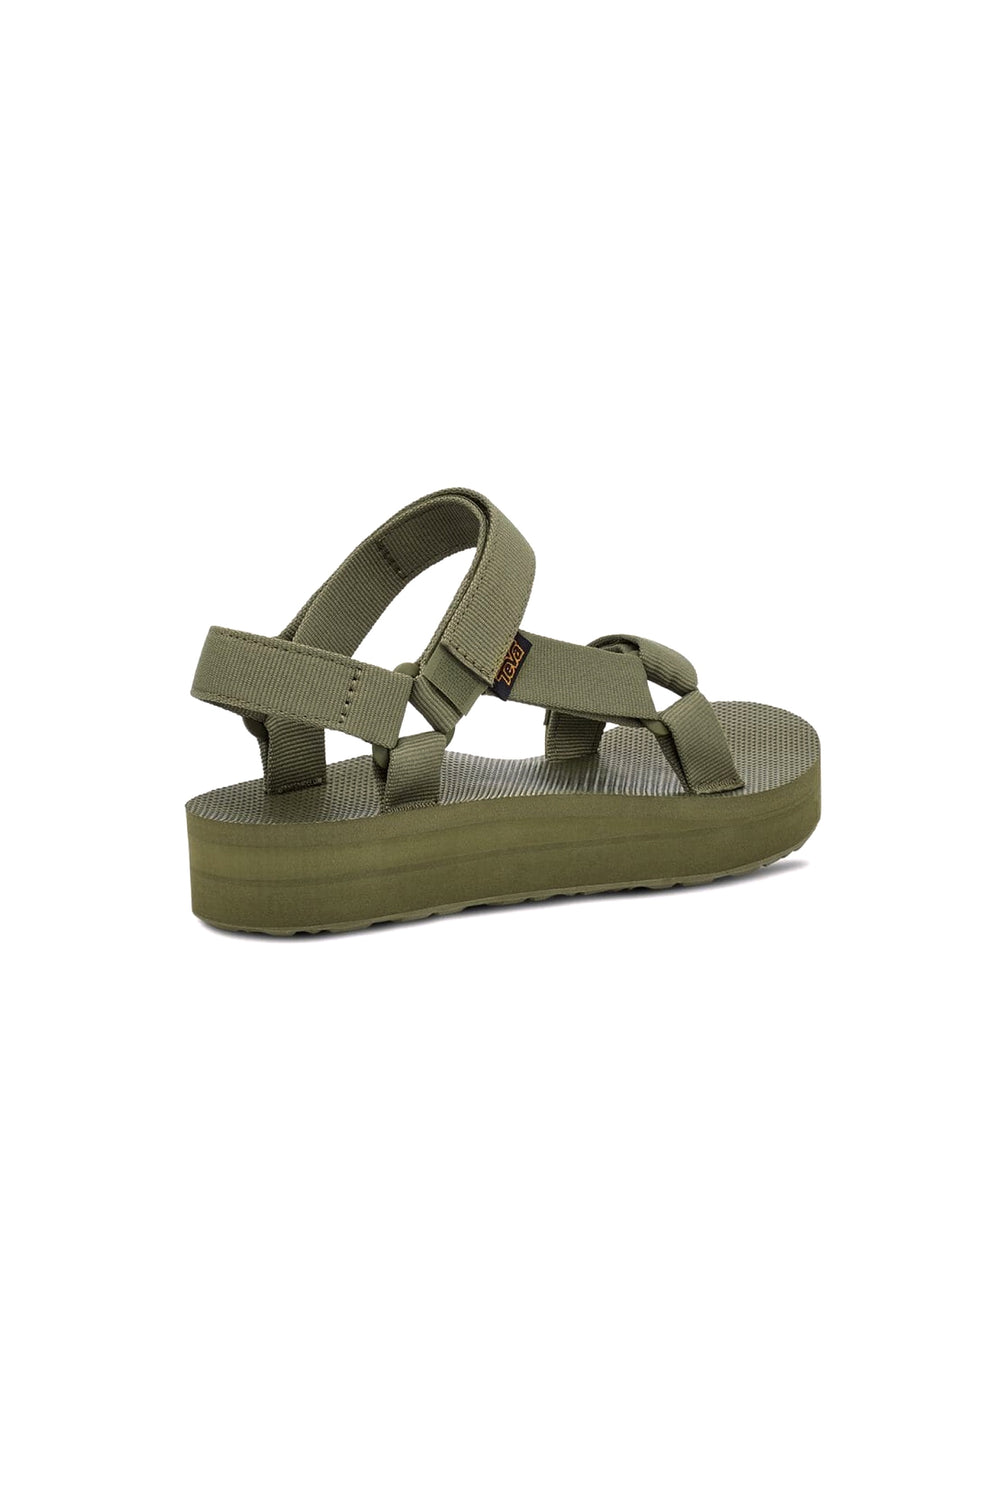 Olive Branch Midform Sandal